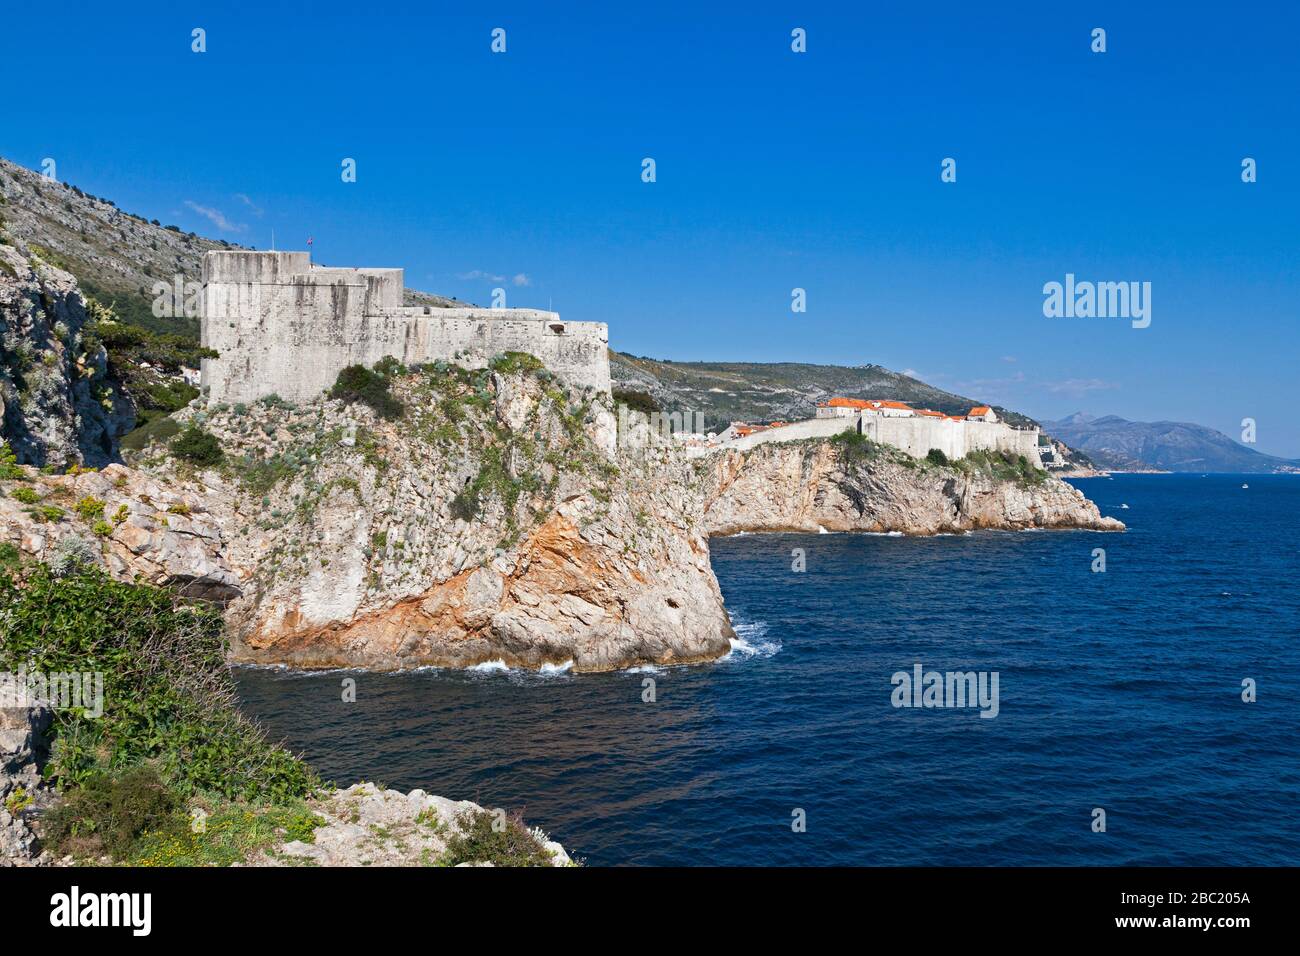 El fuerte Lovrijenac y las paredes de Dubrovnik en la cima de un acantilado con vistas al mar Adriático. Foto de stock